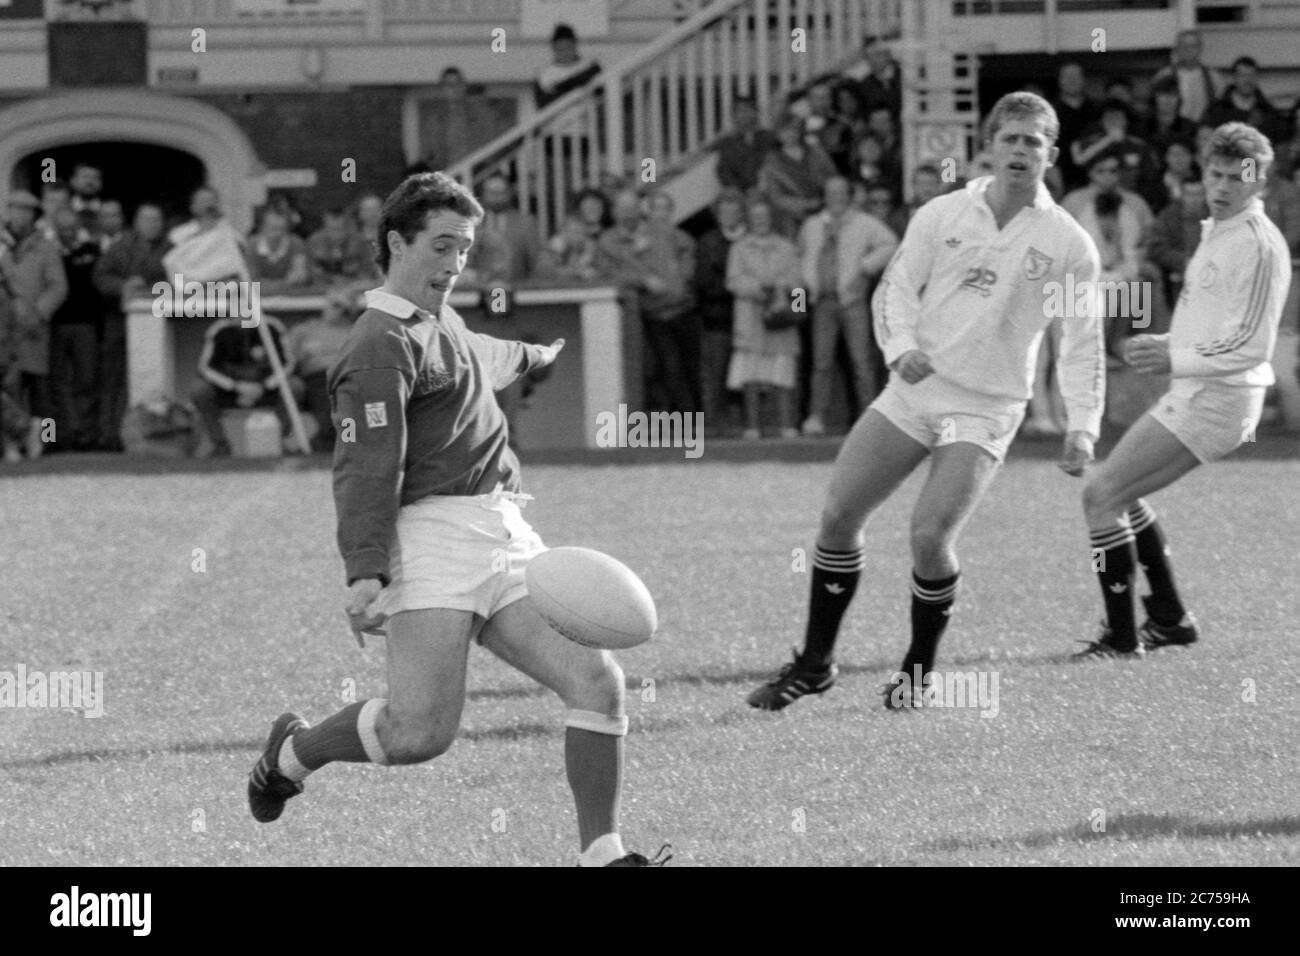 Colin Stephen von Llanelli RFC macht am 14. Oktober 1989 einen Clearing-Kick gegen Swansea RFC im St. Helen's Rugby and Cricket Ground, Swansea. Stockfoto